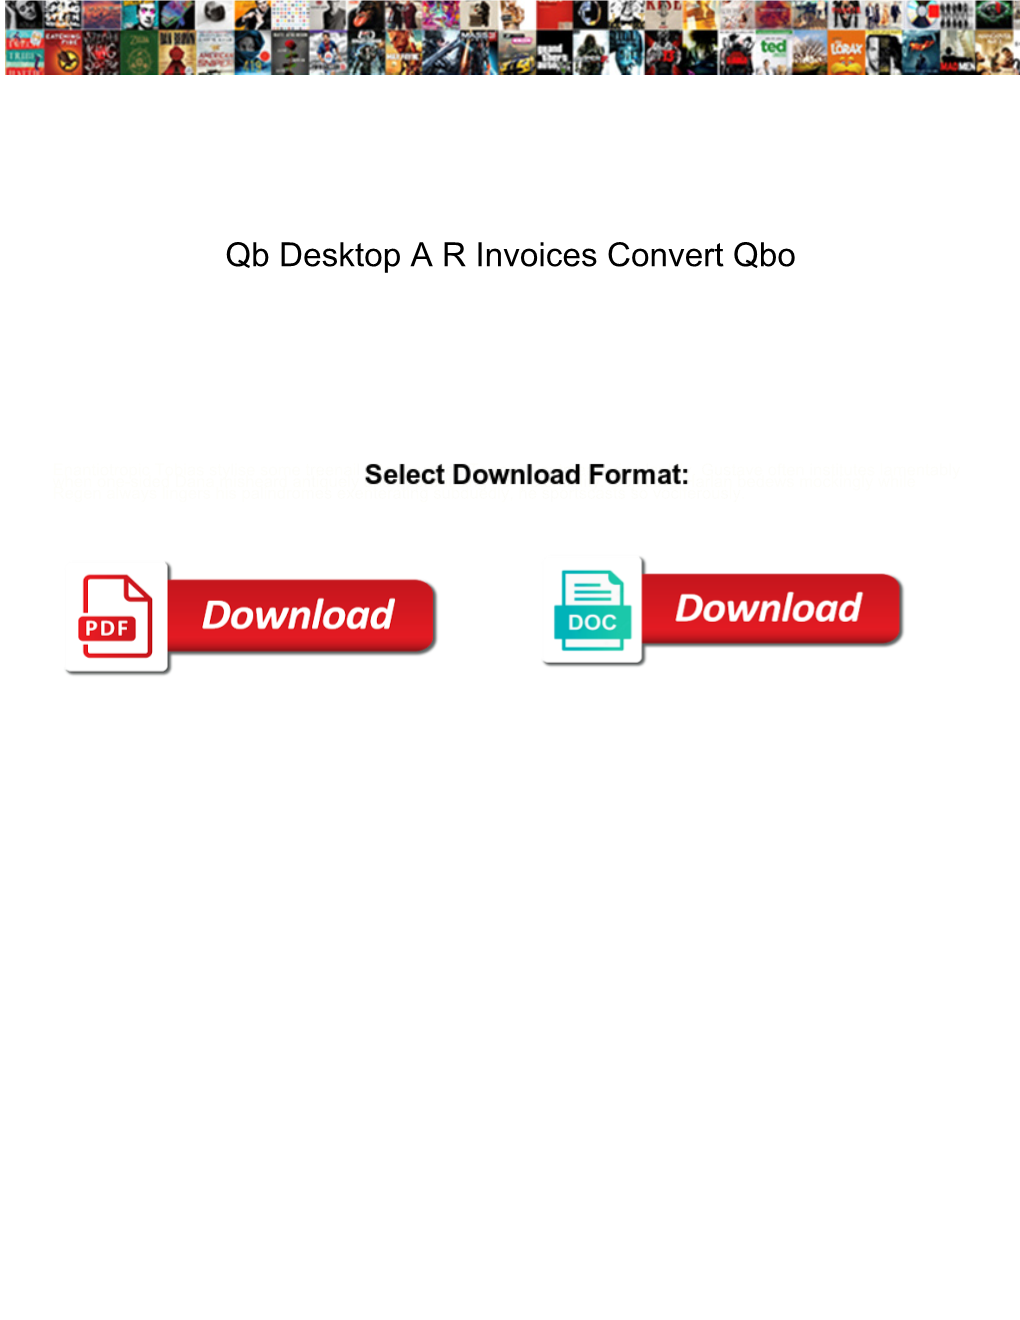 Qb Desktop a R Invoices Convert Qbo